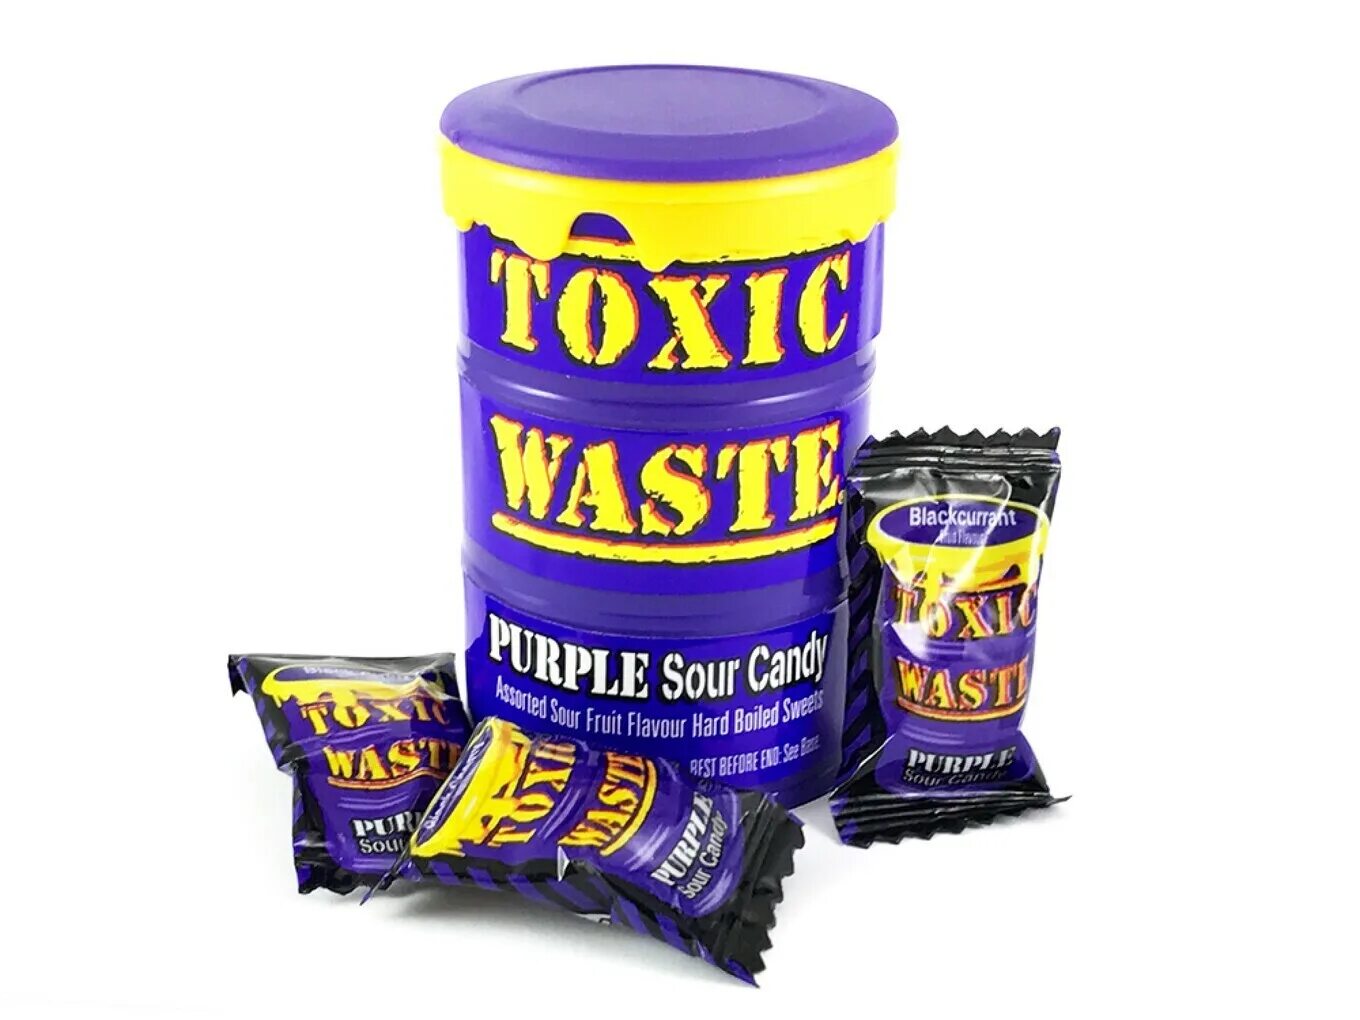 Toxic waste конфеты. Леденцы Toxic waste Purple 42гр. Леденцы Toxic waste Tub Purple 42 гр. Кислые конфеты Toxic waste. Токсик купить